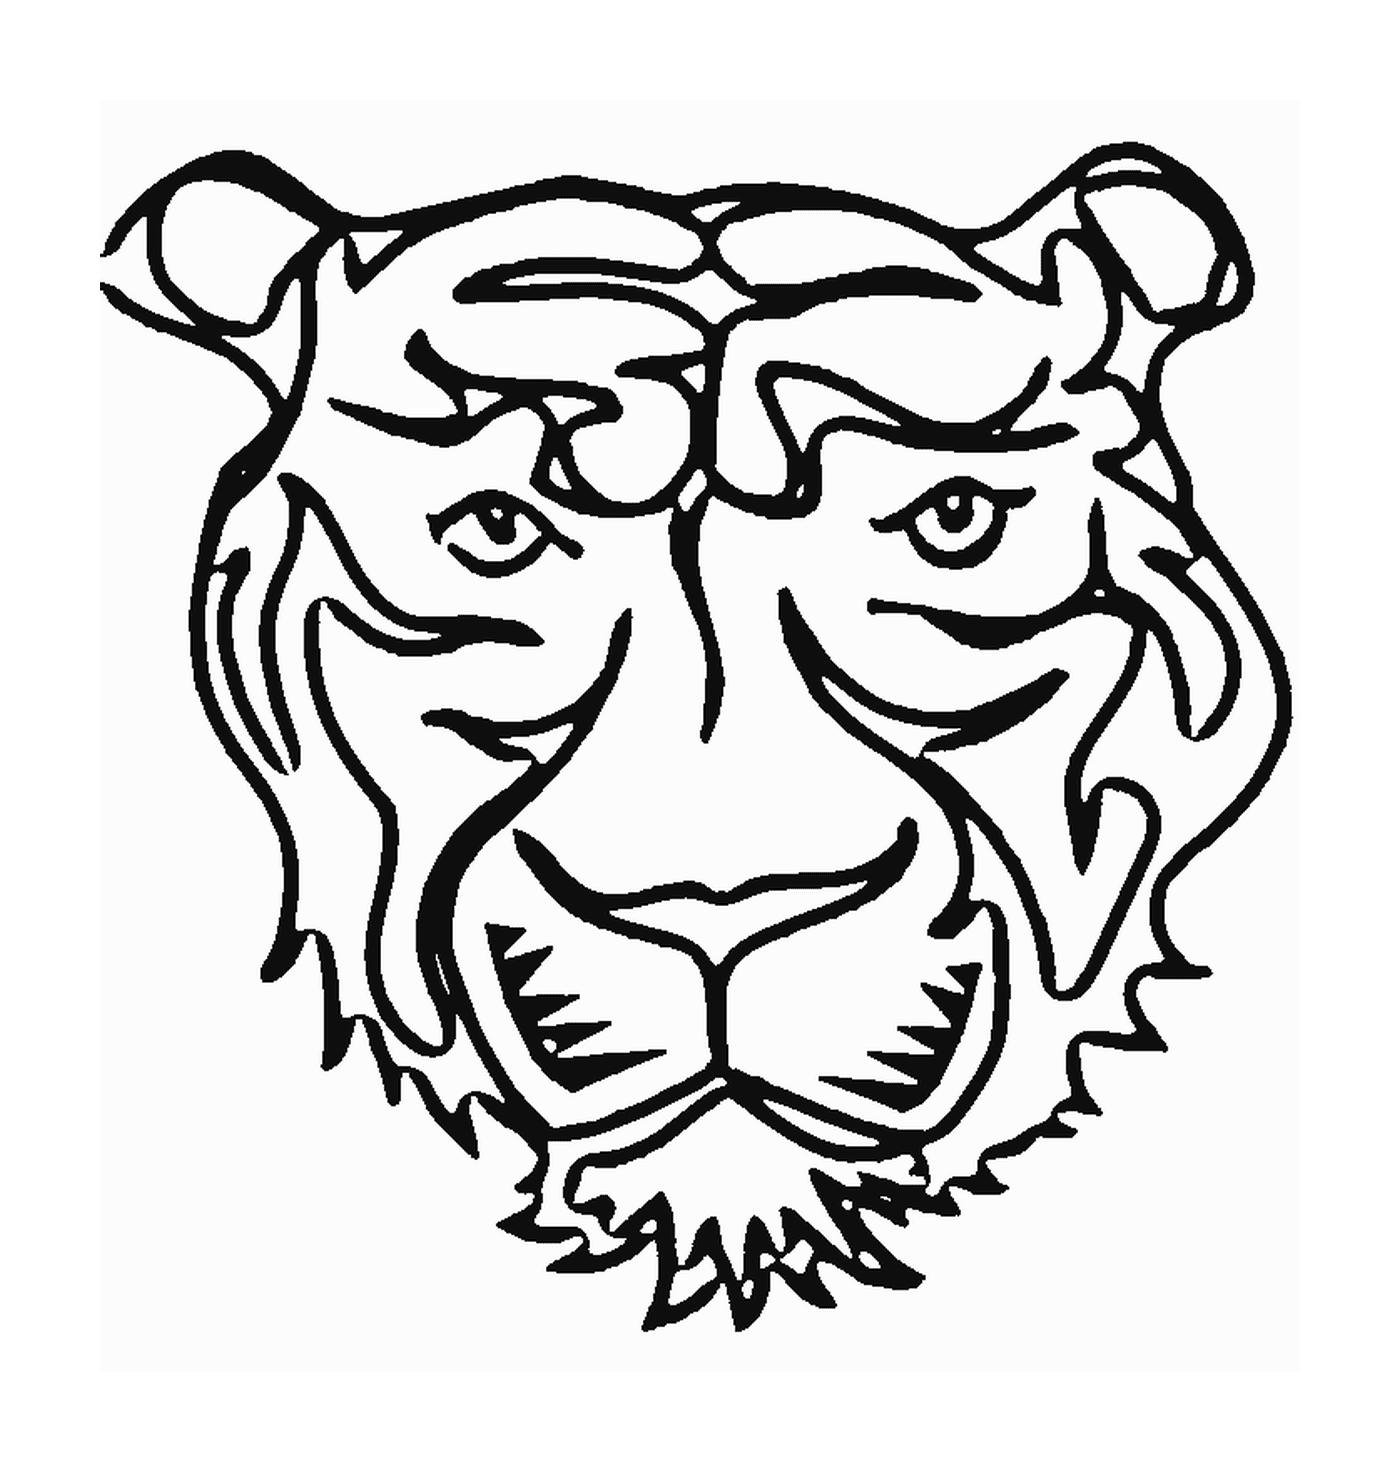  Голова тигра спереди 